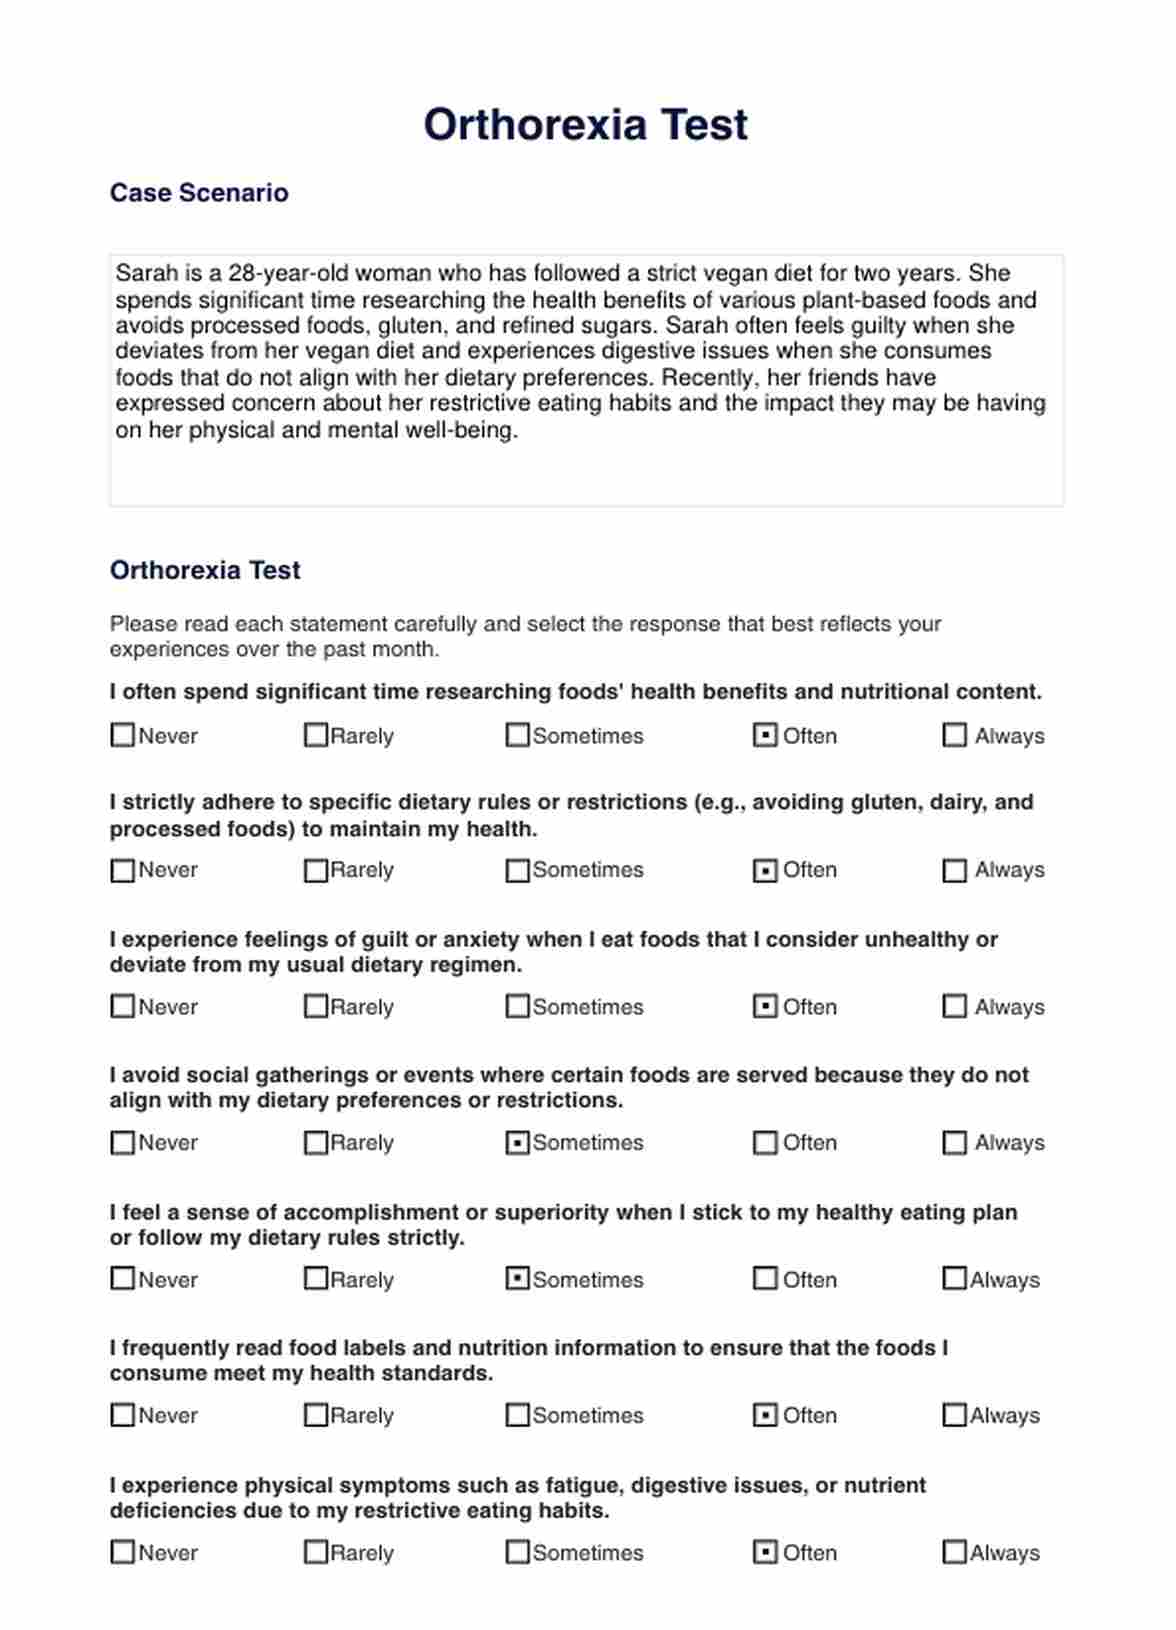 Orthorexia Test PDF Example